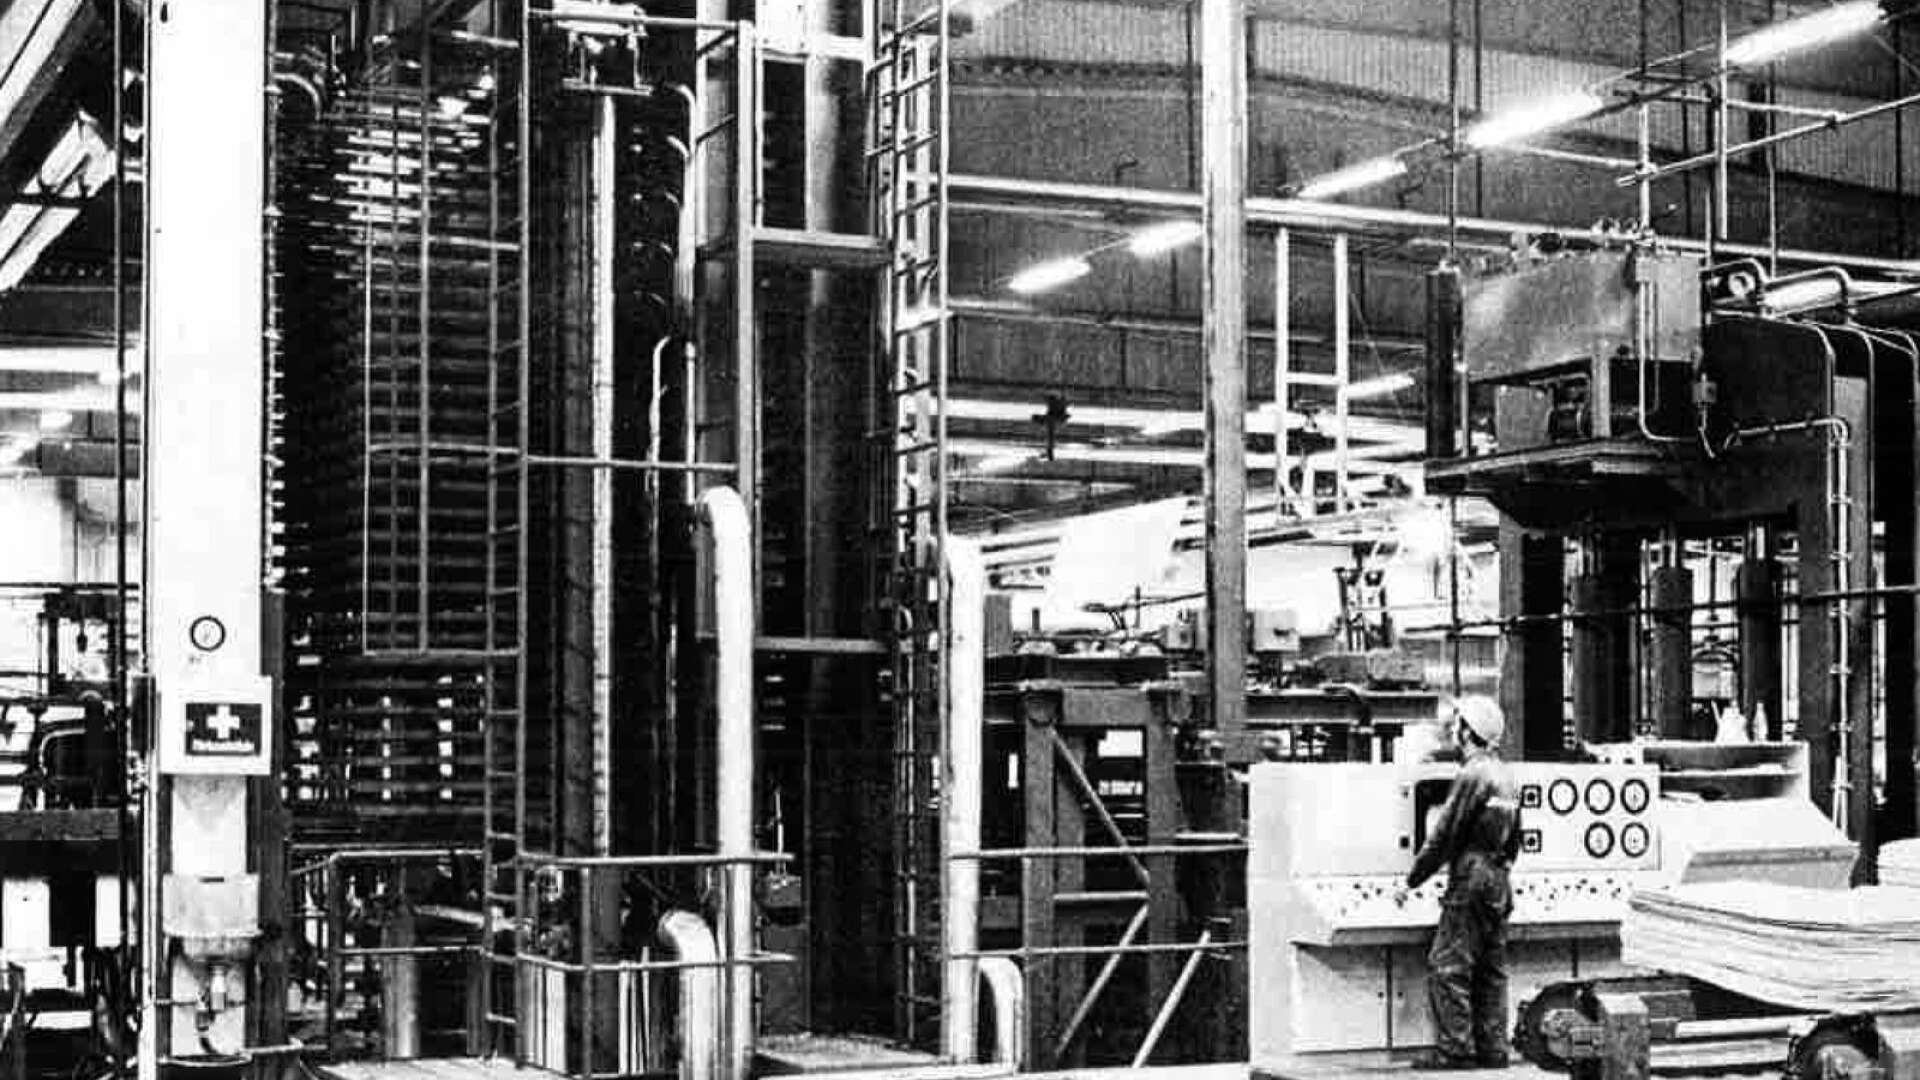 Fjellmans press - en av de första svenska maskinerna, tillverkad i Mariestad. Pressen har funnits kvar i fabriken sedan start, men har moderniserats under åren.